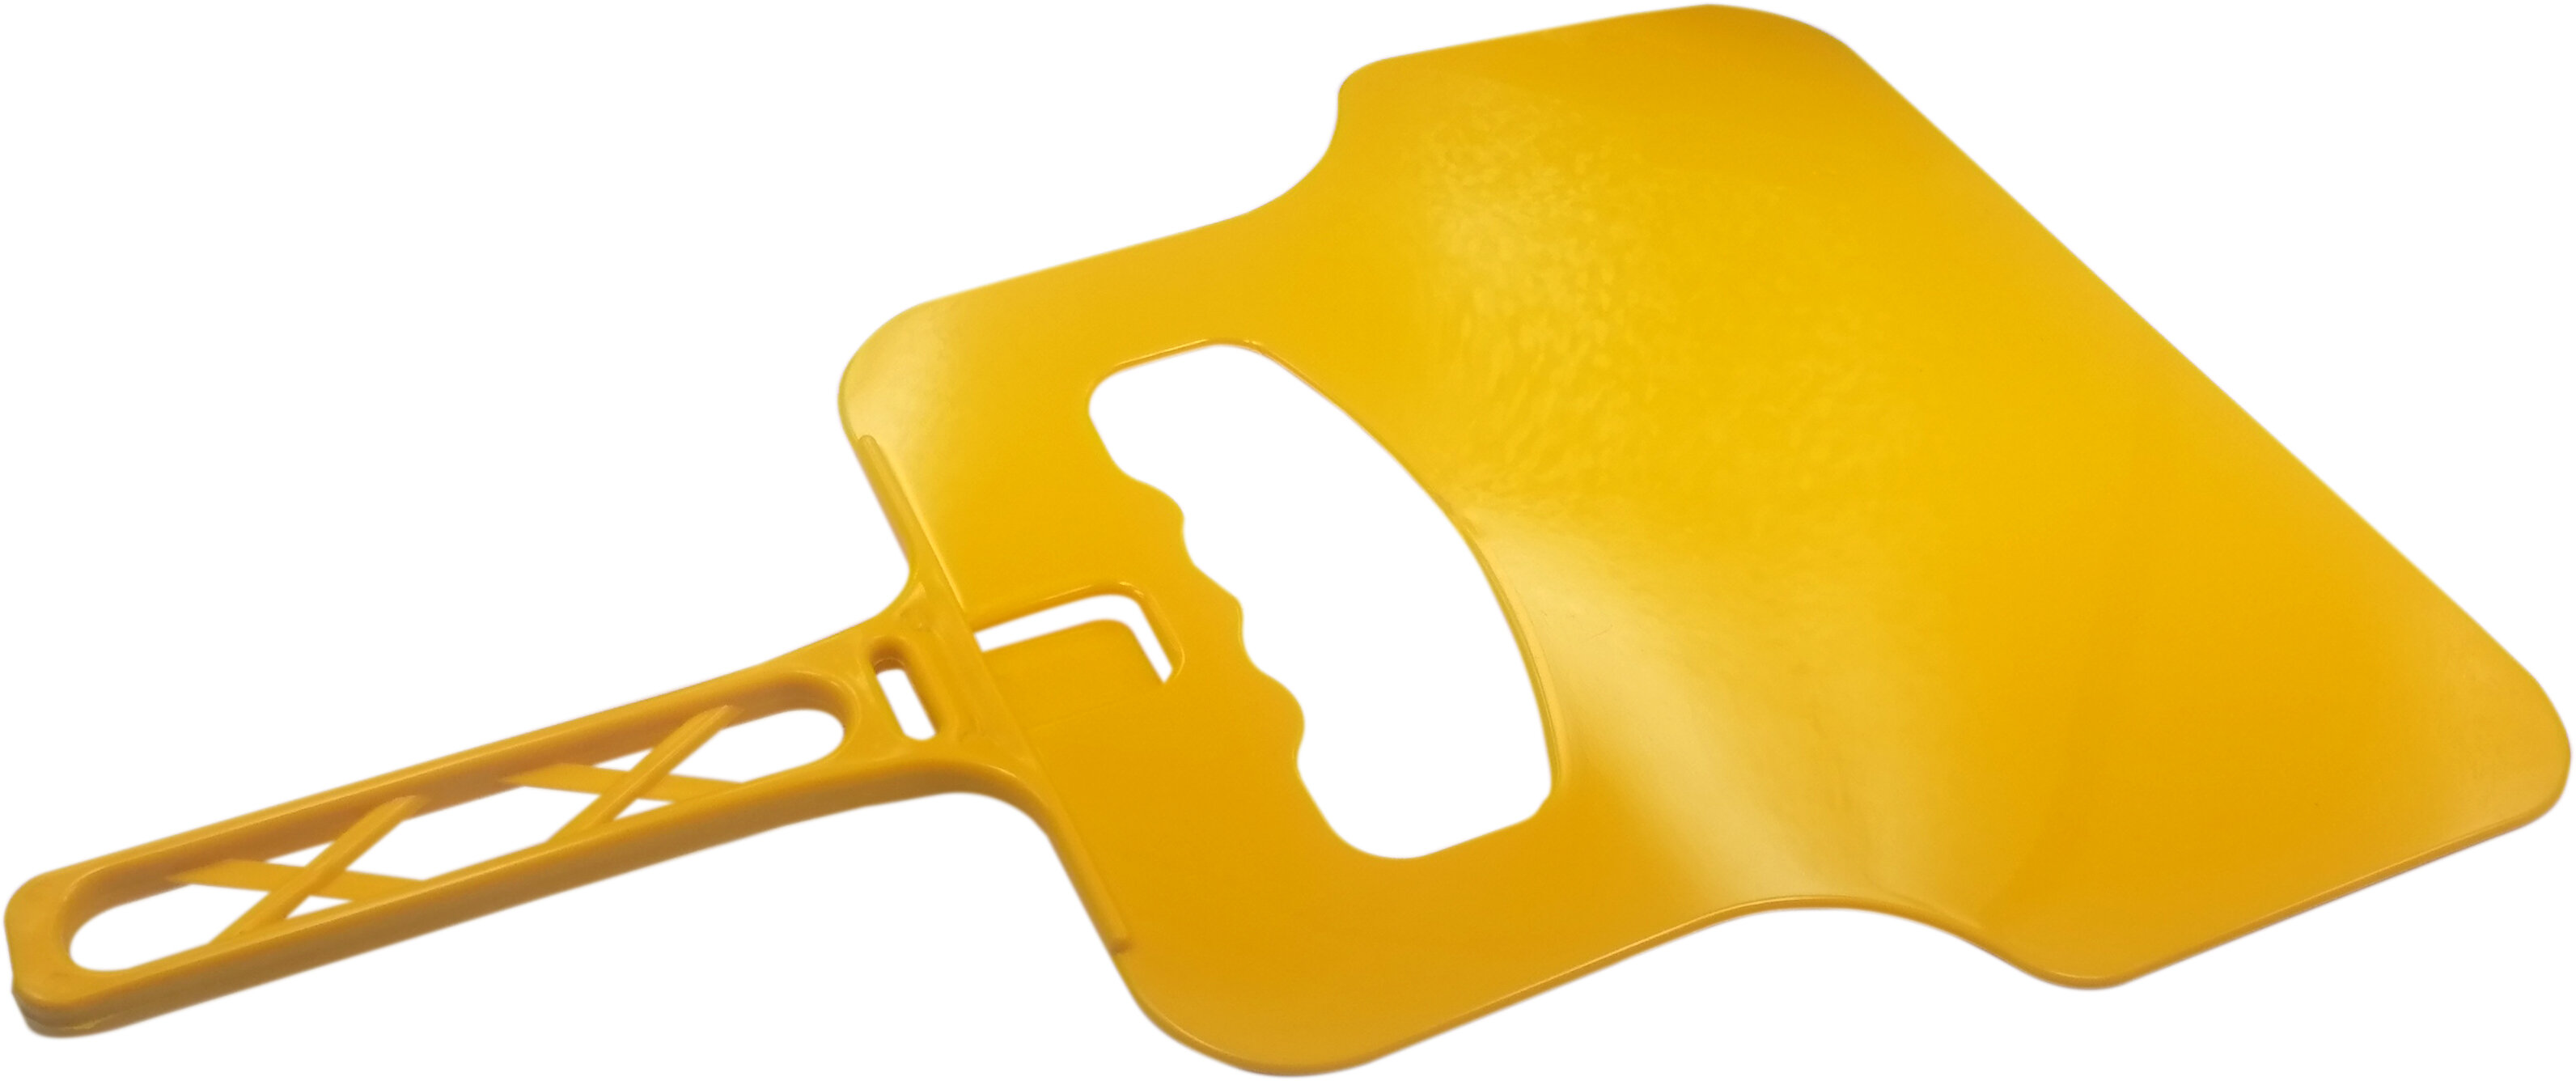 Веер для мангала/опахало для мангала от бренда AQVAKING цвет желтый - фотография № 2